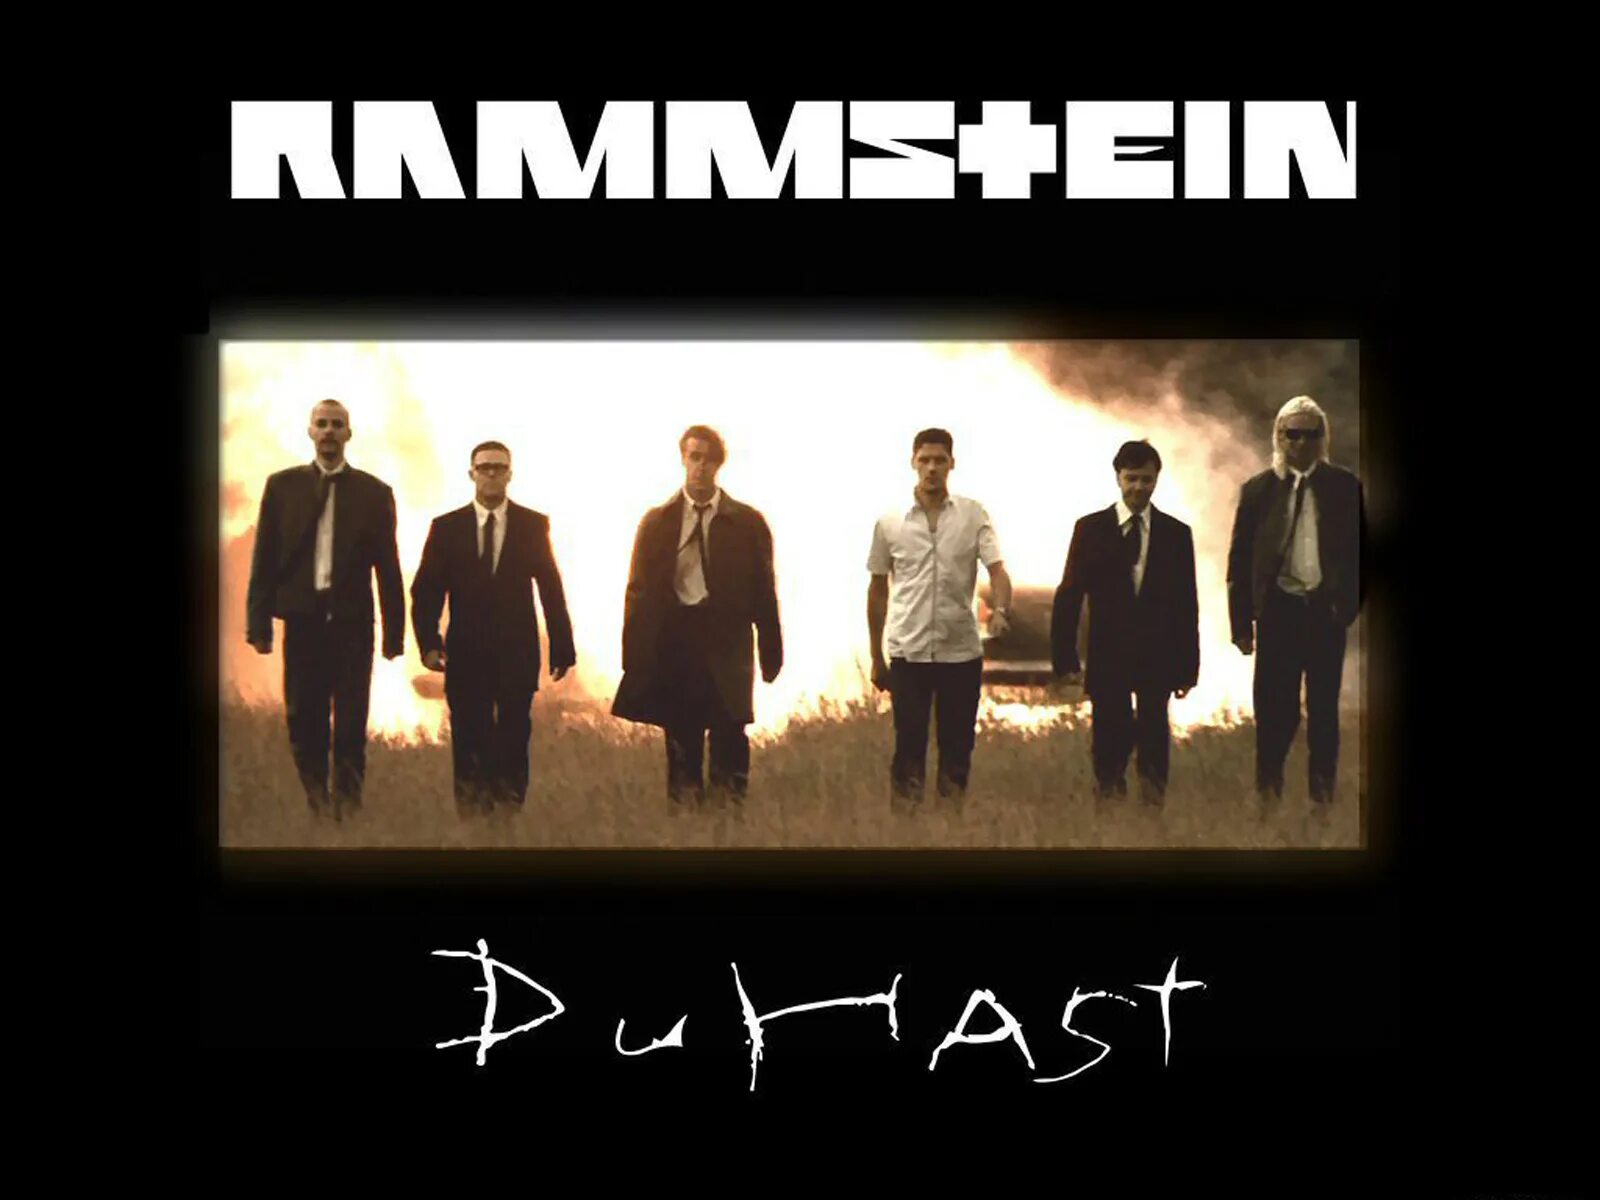 Песня рамштайн ду хаст на русском. Группа рамштайн духаст. Rammstein du hast обложка. Рамштайн Ду. Rammstein du hast.